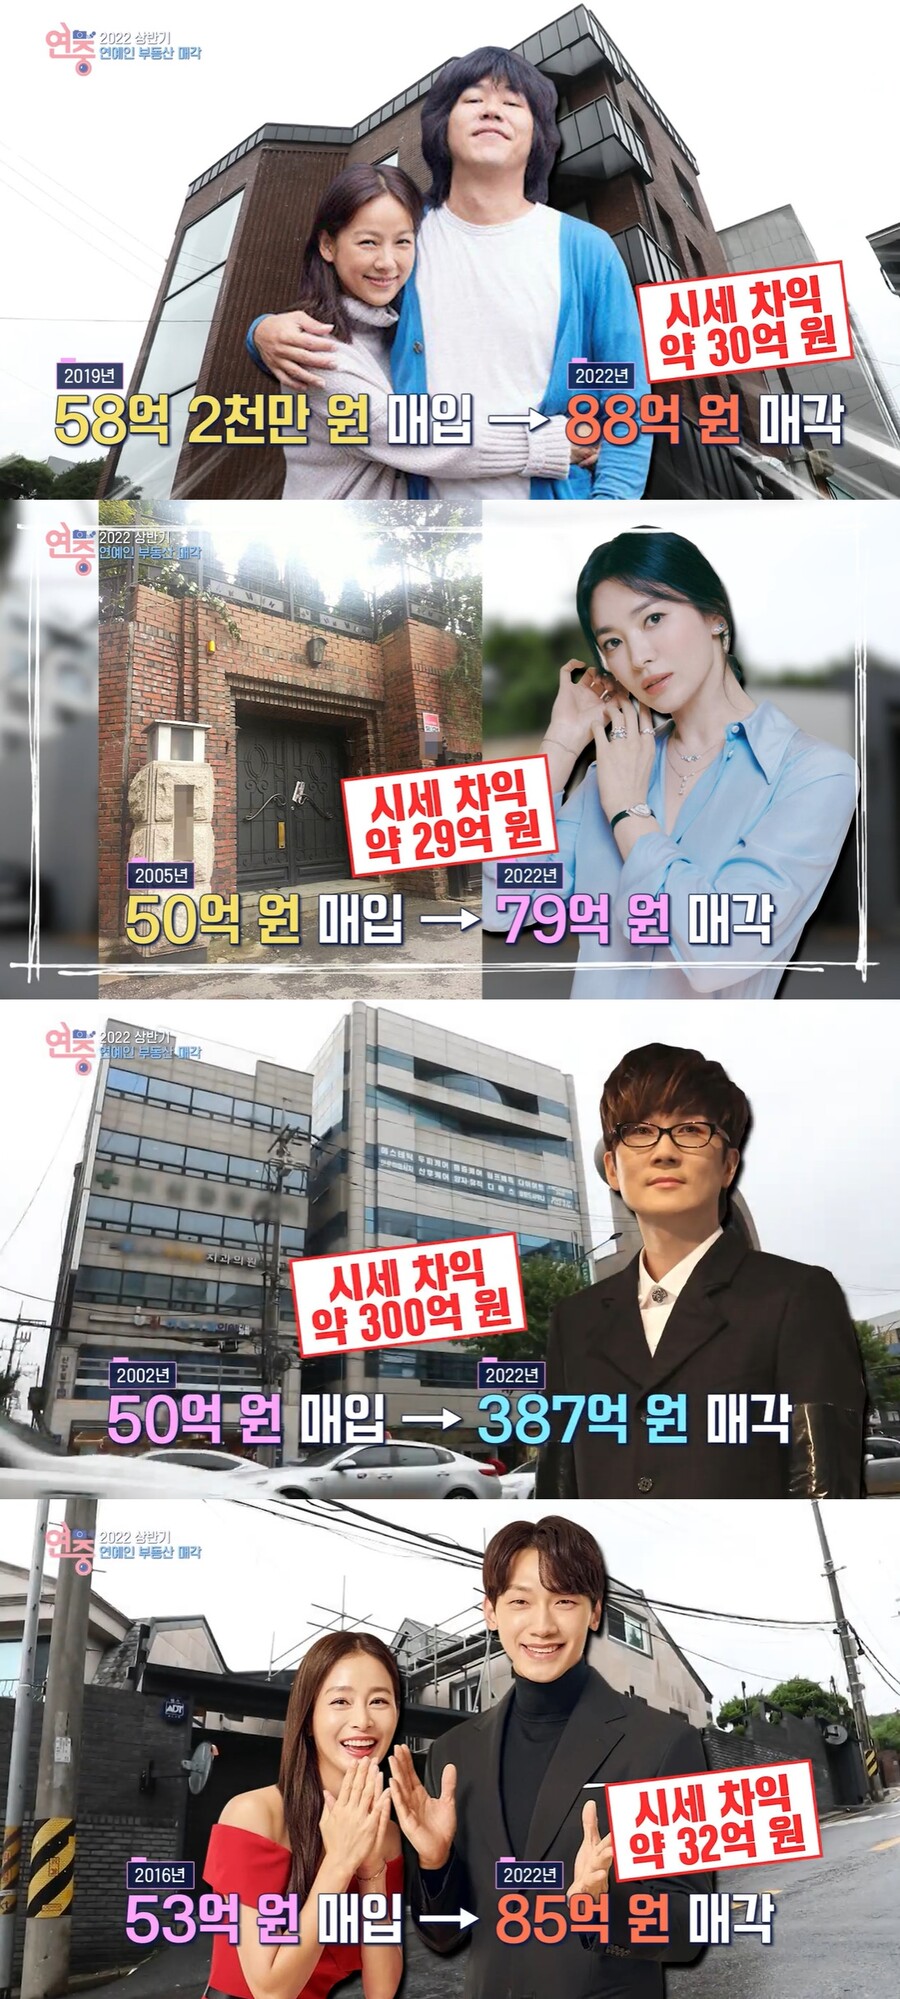 ▲ KBS2 '연중 라이브' 방송 화면. 출처| KBS